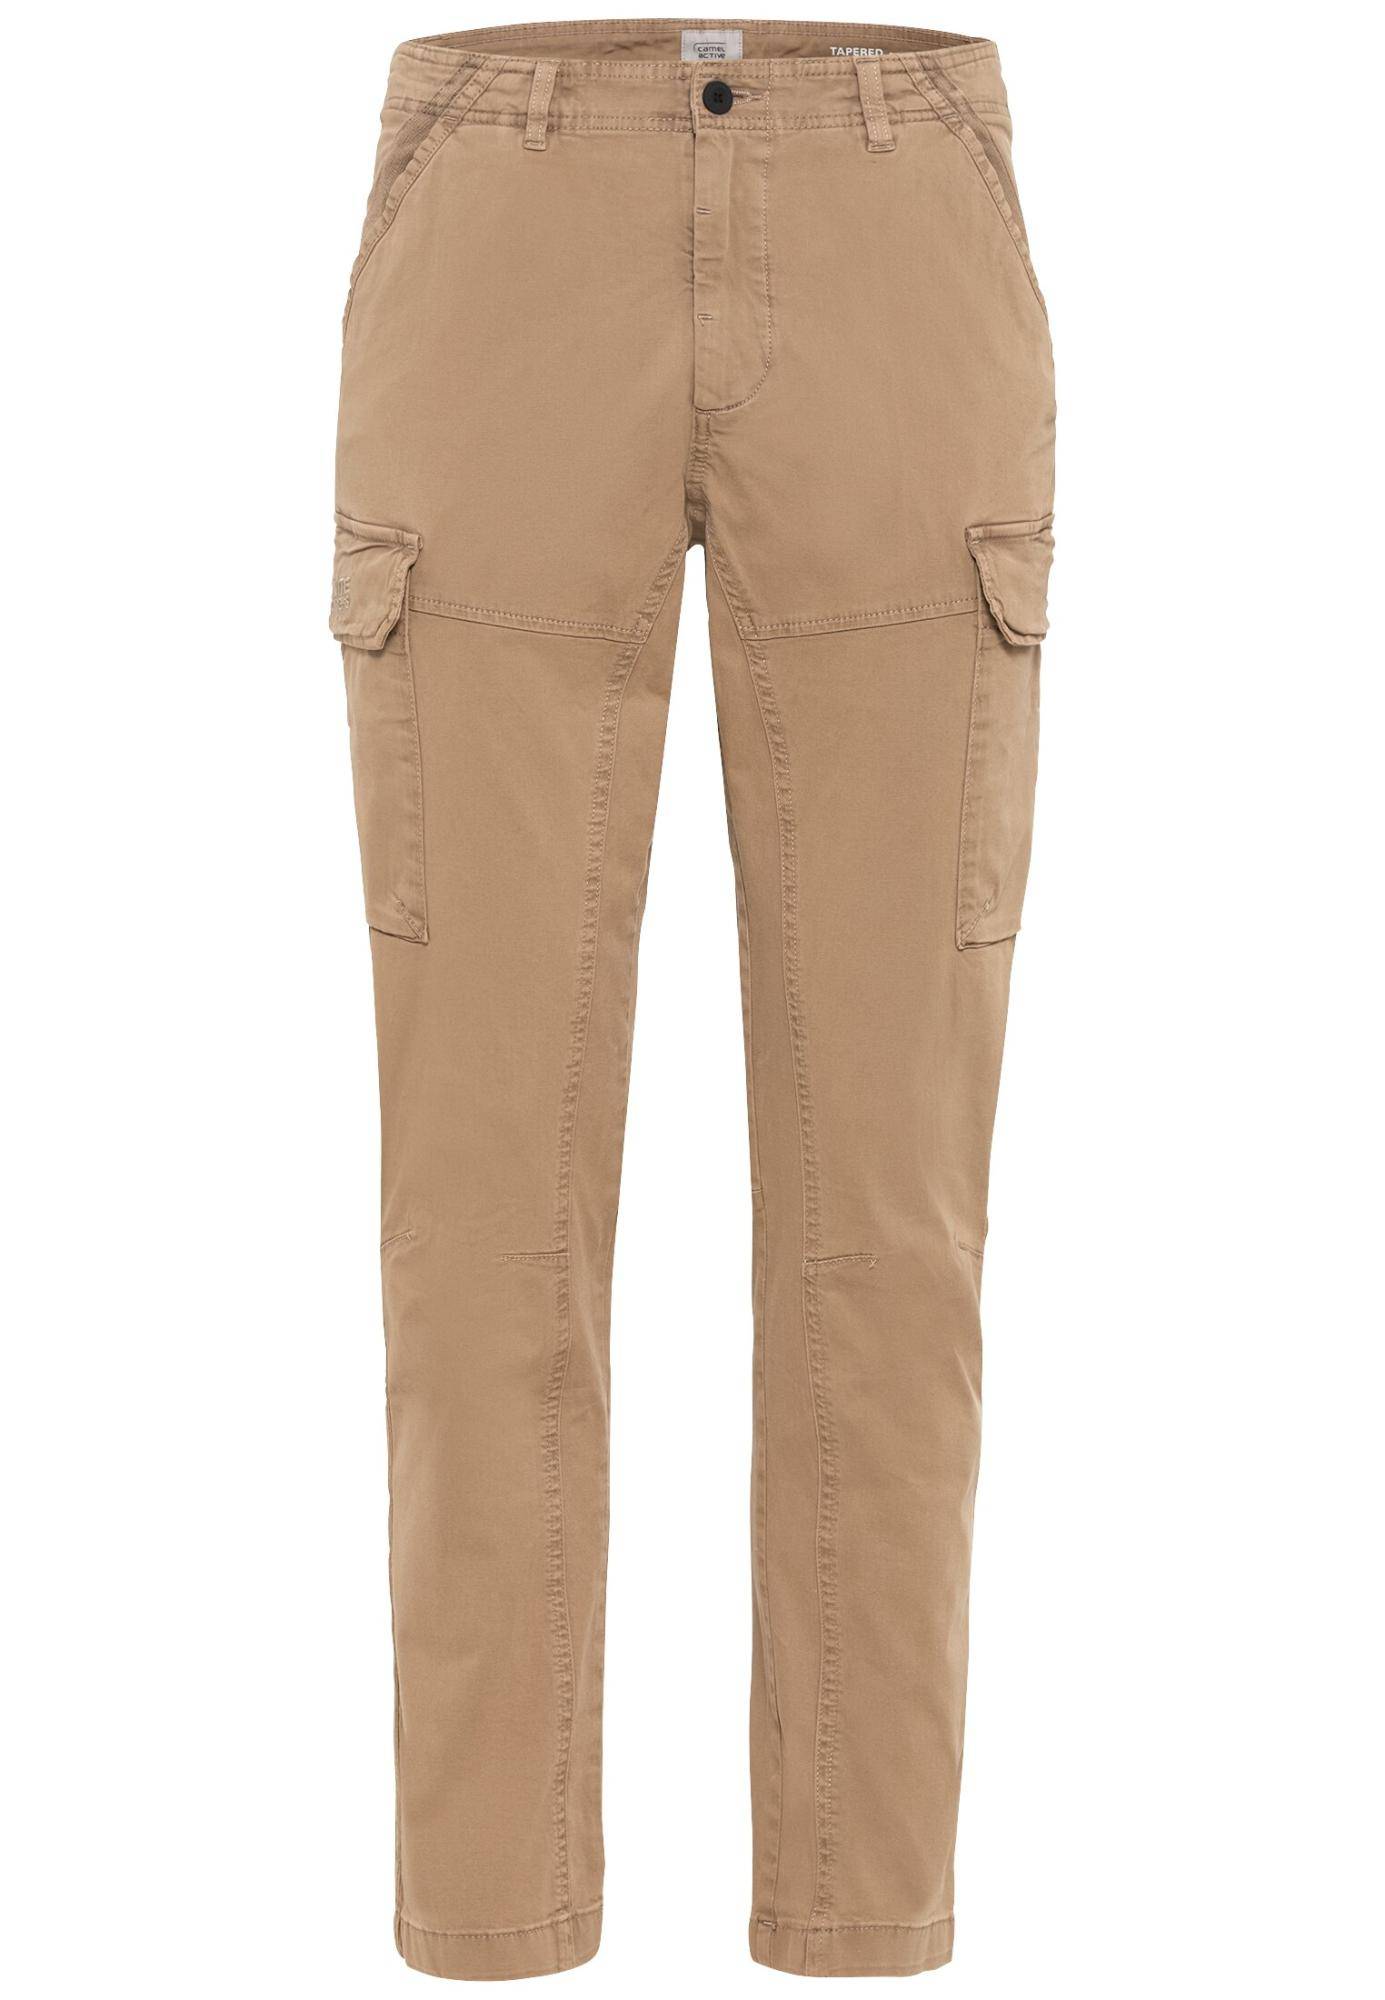 Мужские брюки Camel Active, бежевые, цвет бежевый, размер 38